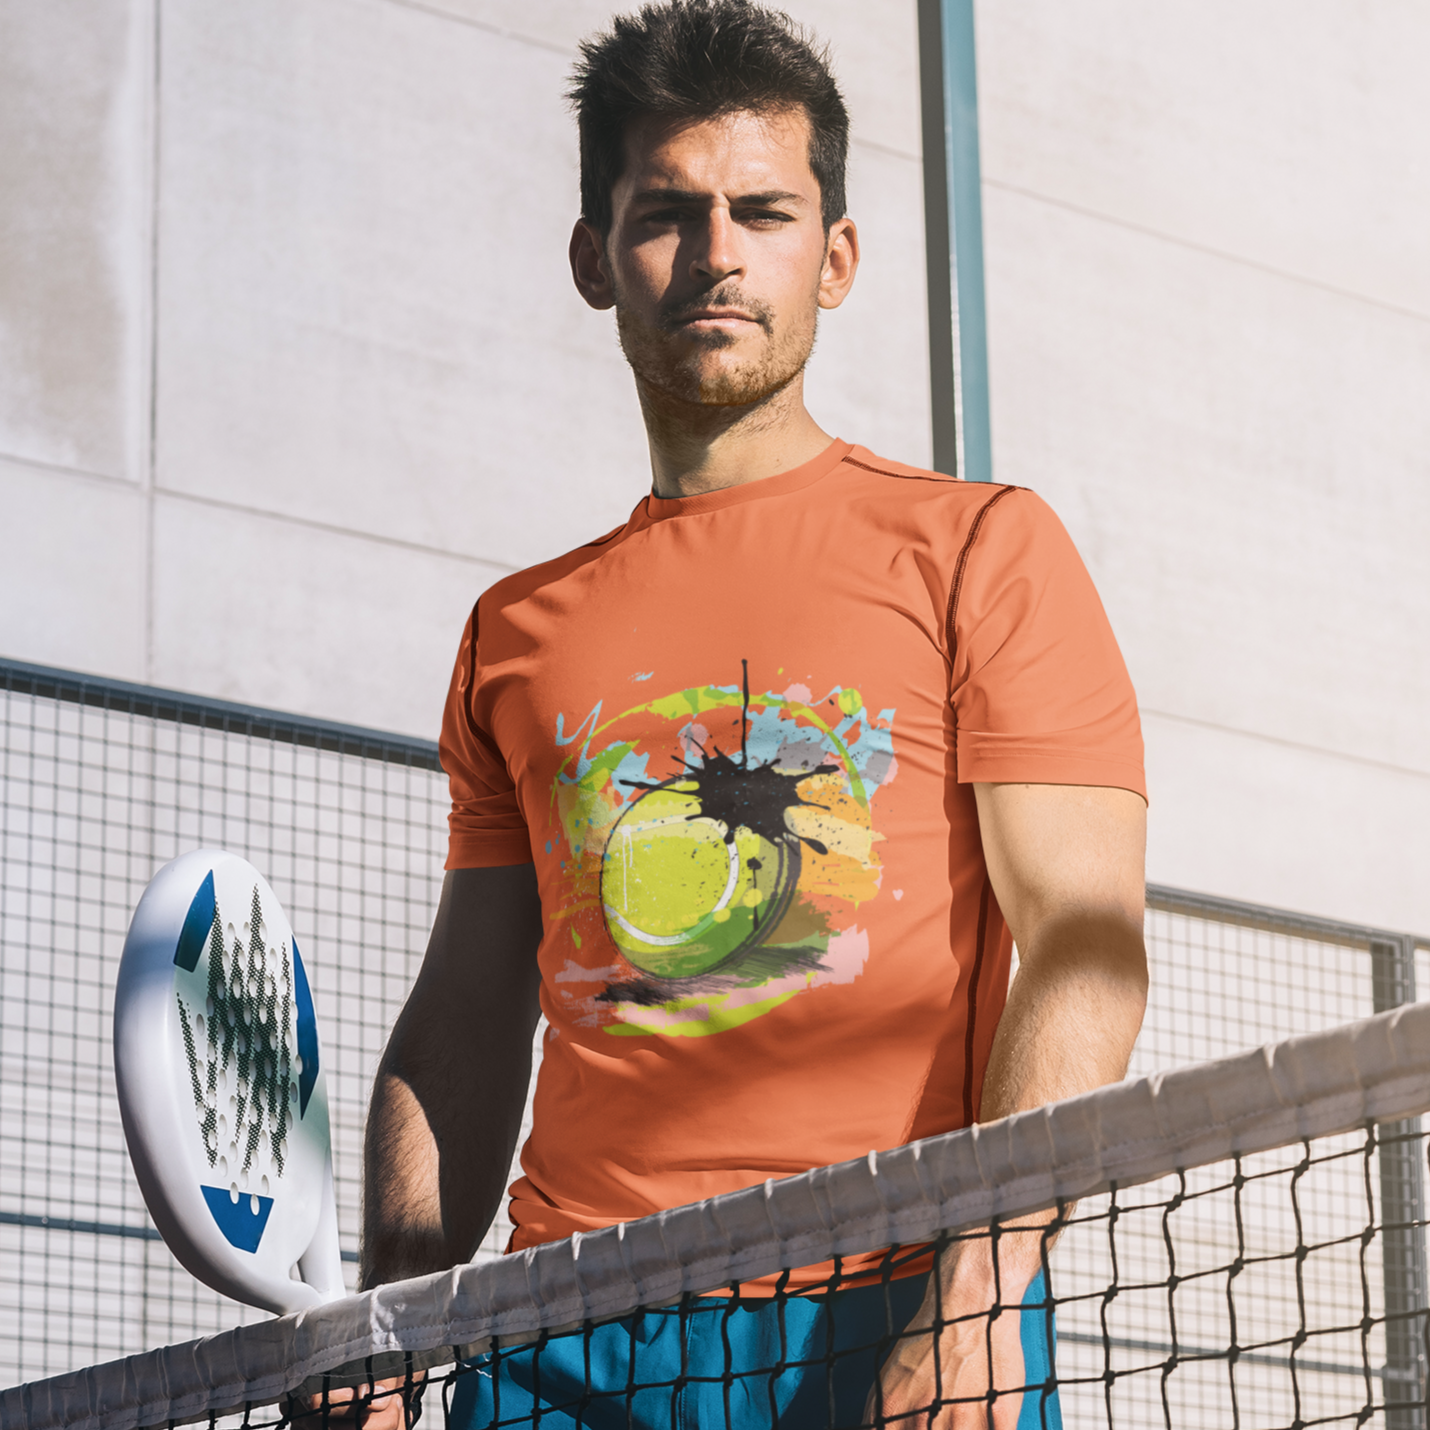 Men's Tennis Ball Sports T-Shirt - Sport Finesse